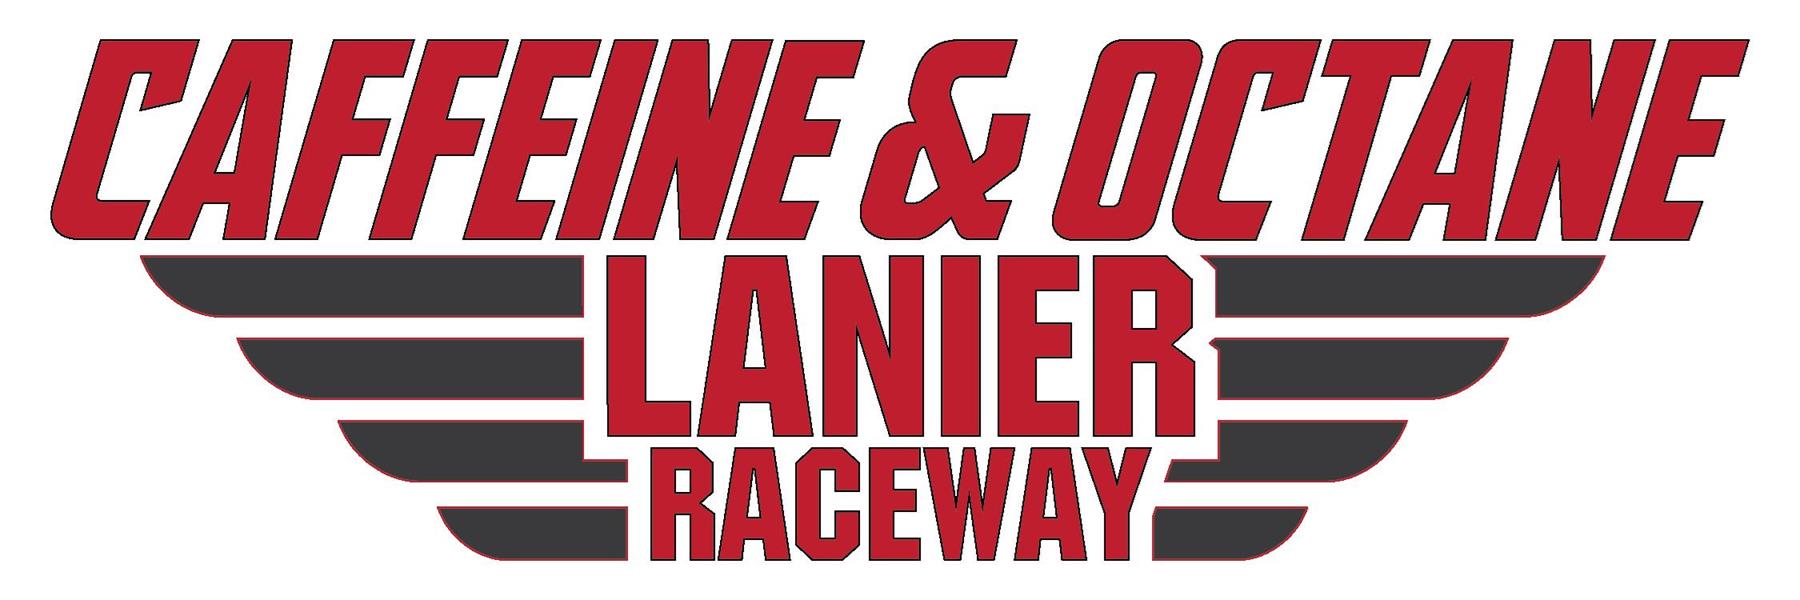 4/29/2006 - Caffeine and Octane's Lanier Raceway